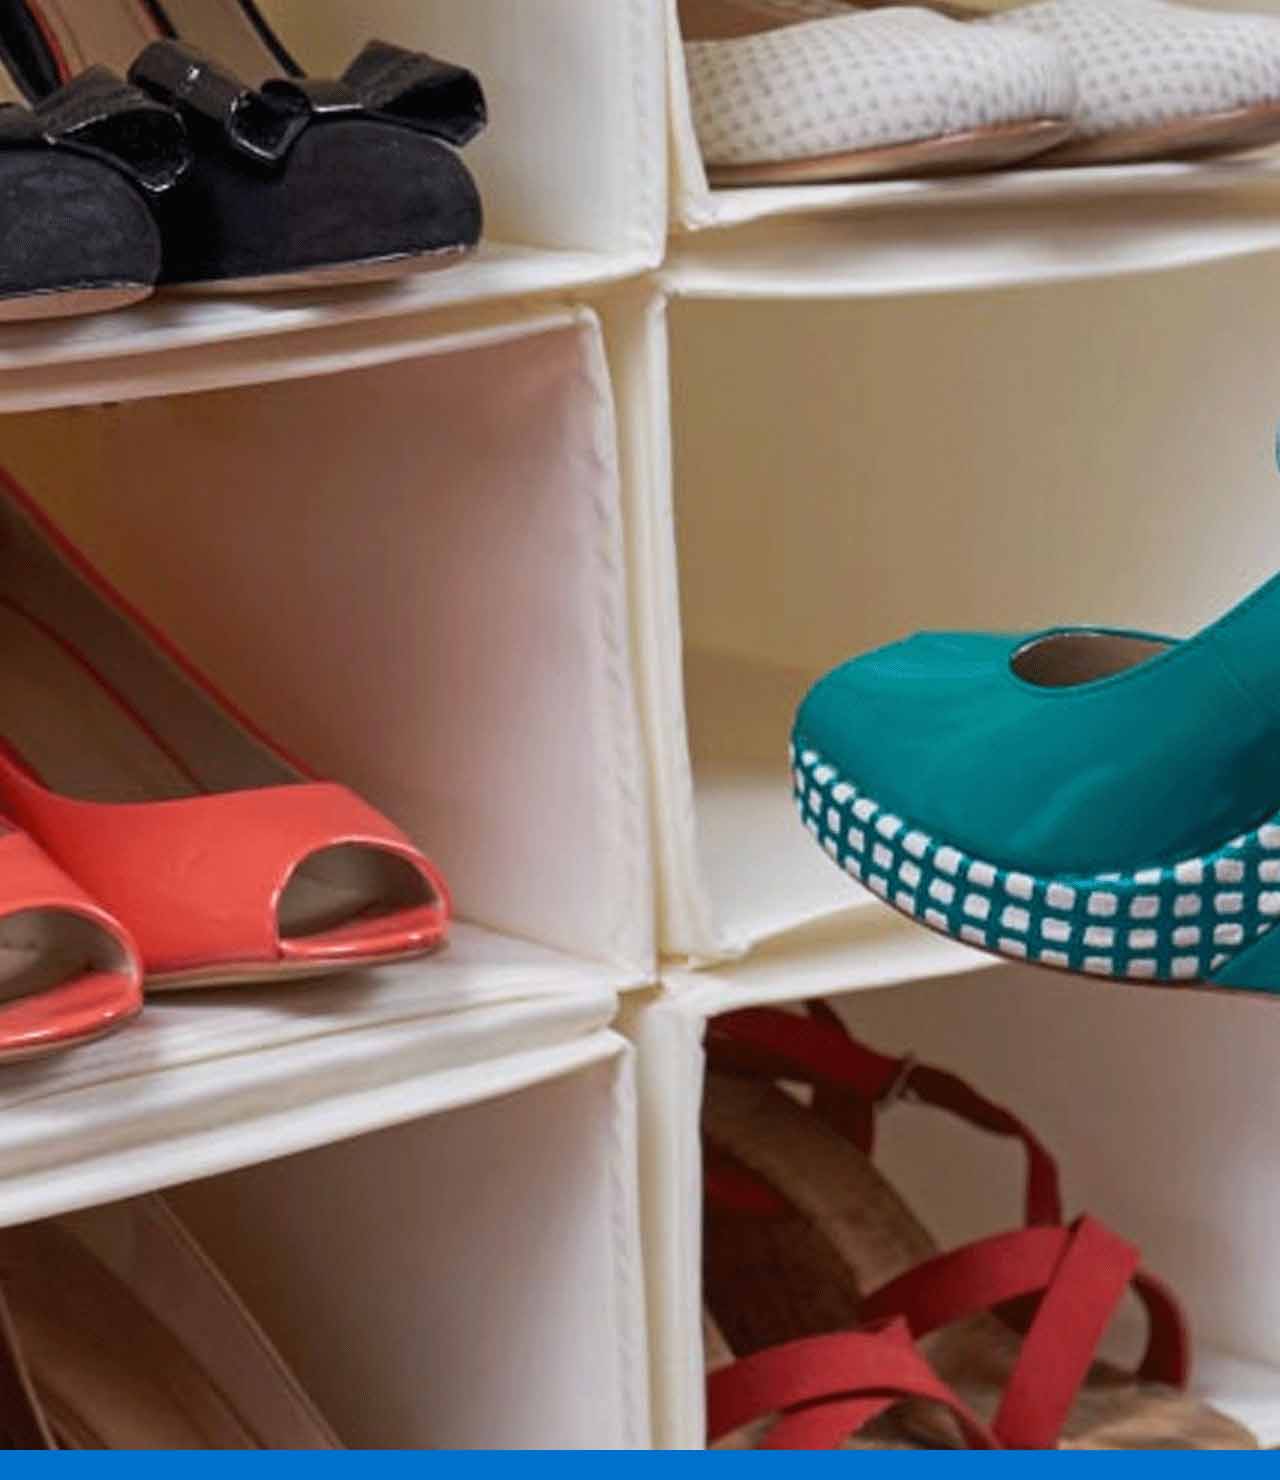 Descubre diferentes maneras de cómo organizar zapatos en espacios pequeños